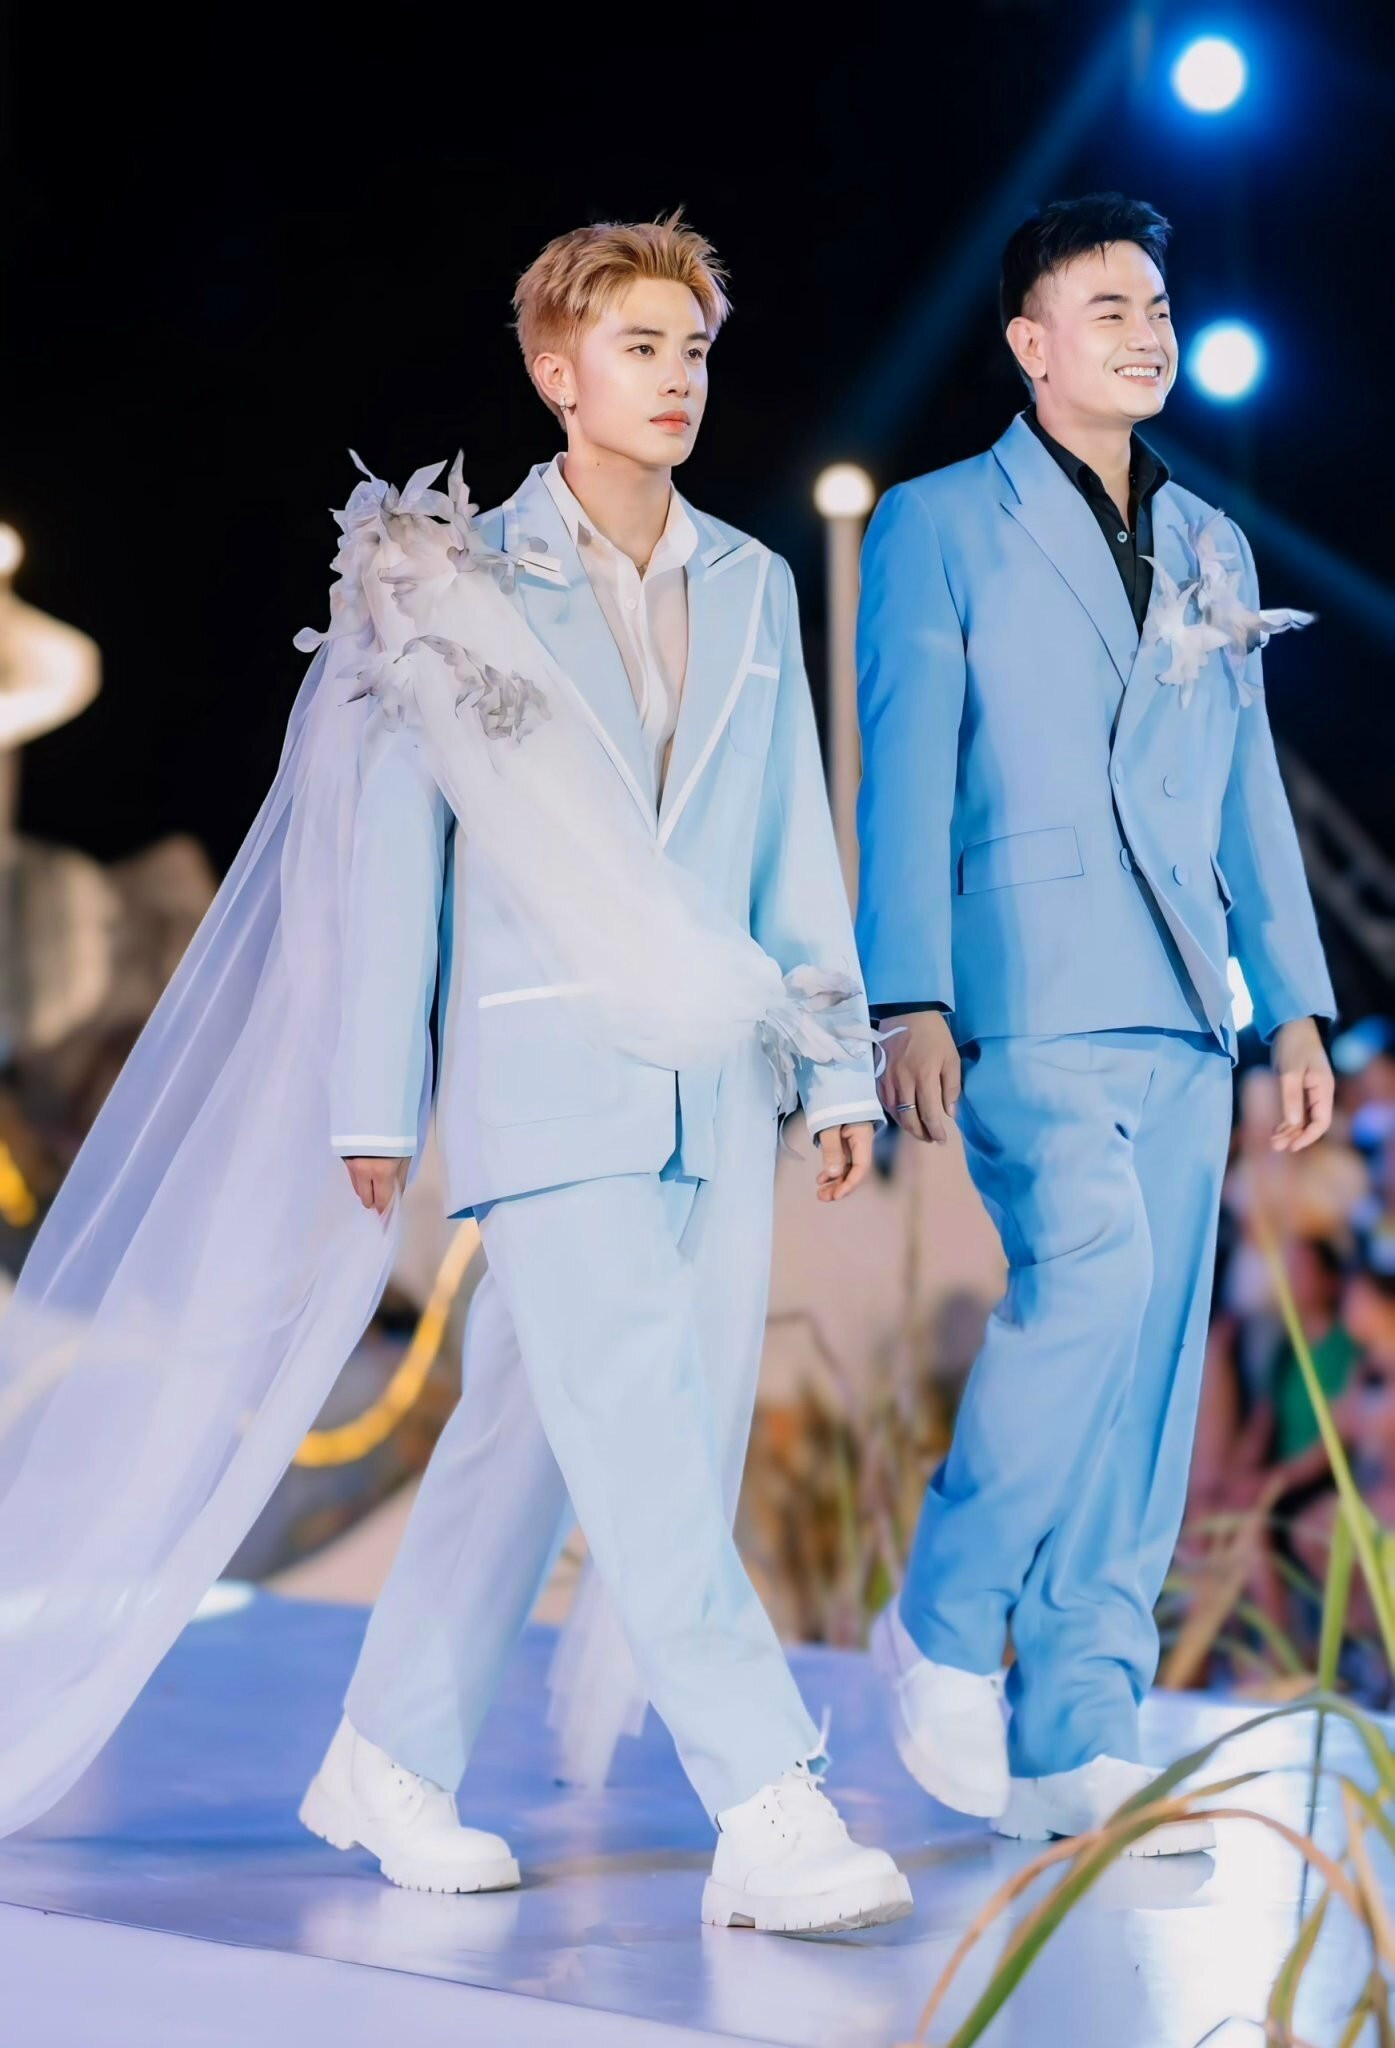 Người đứng sau dự án thời trang kết hợp thiện nguyện đặc biệt này chính là hai chàng trai Võ Hoàng Anh và Sùng Việt Anh - một bộ đôi vẫn thường hay được gọi bằng cái tên chung 